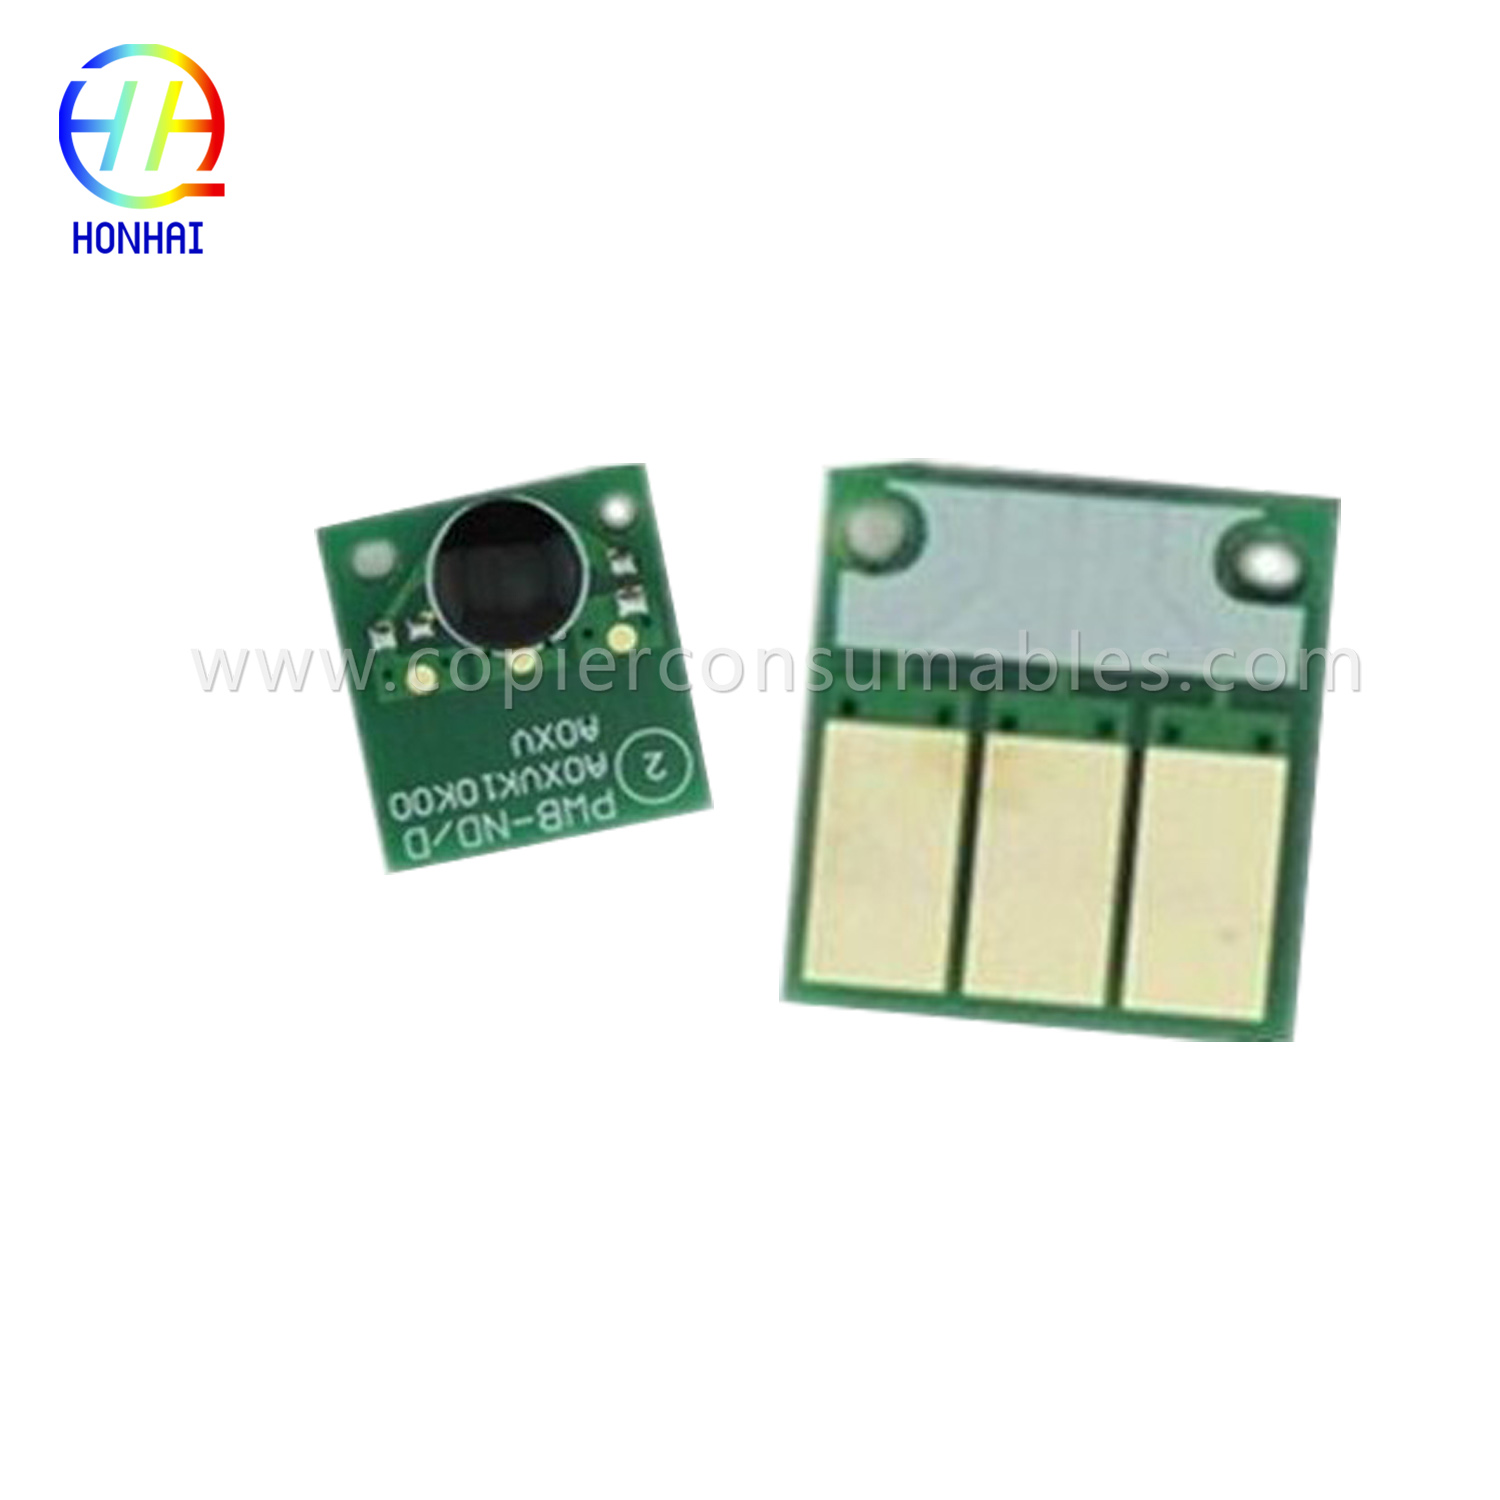 Konica Minolta C220 C280 C360-д зориулсан хорны хайрцагны чип